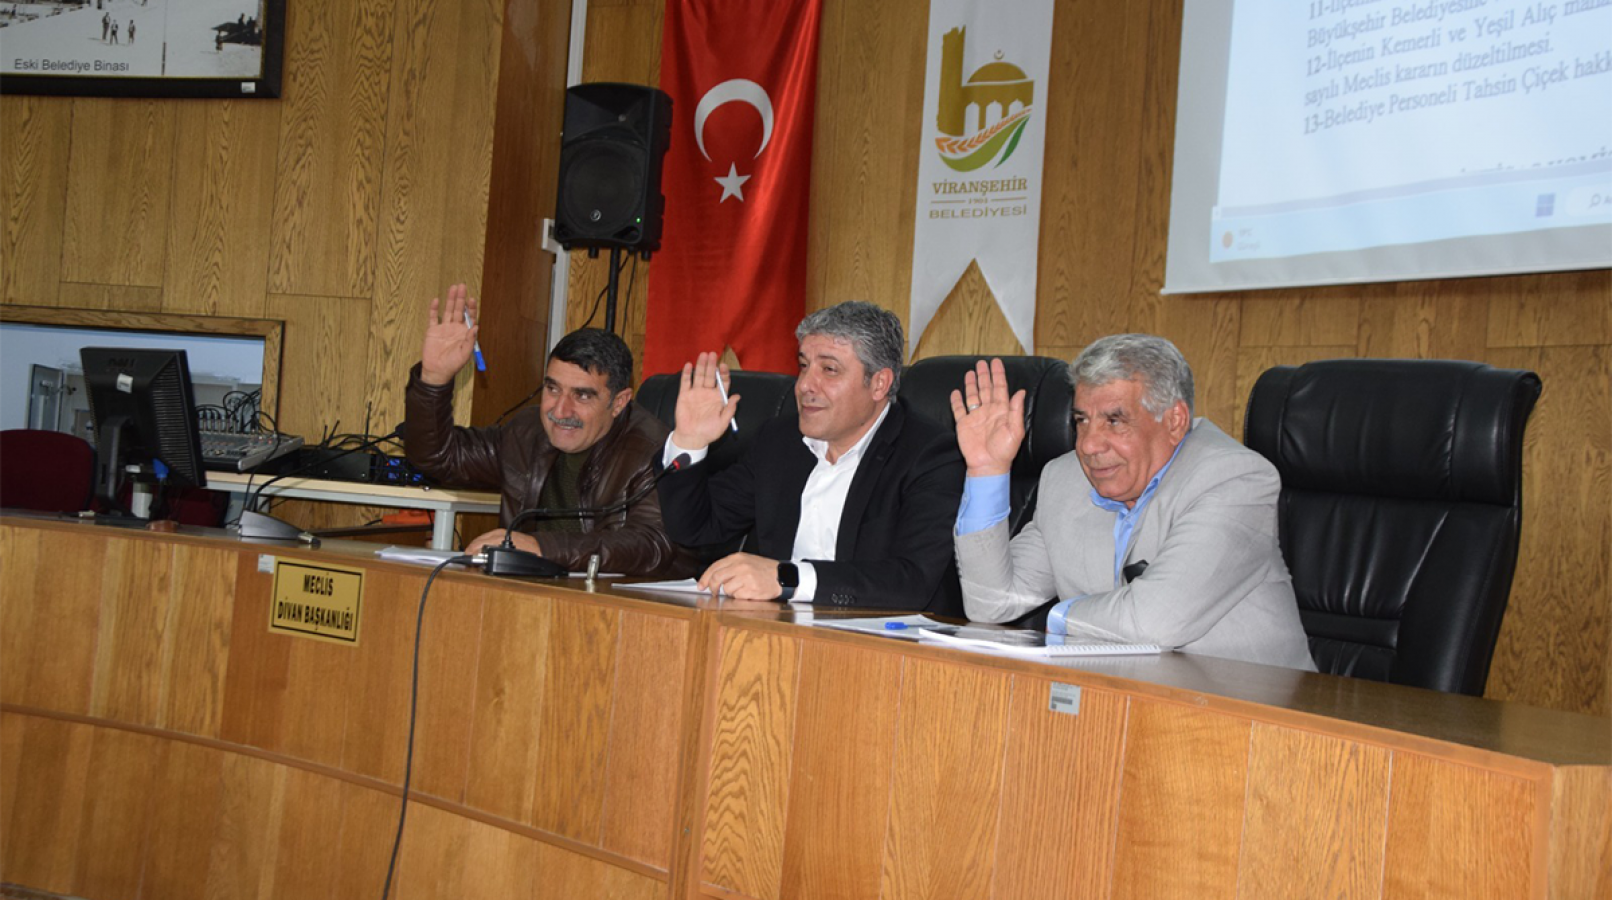 Viranşehir Meclisi Adıyaman ile kardeş kent olma kararı aldı;